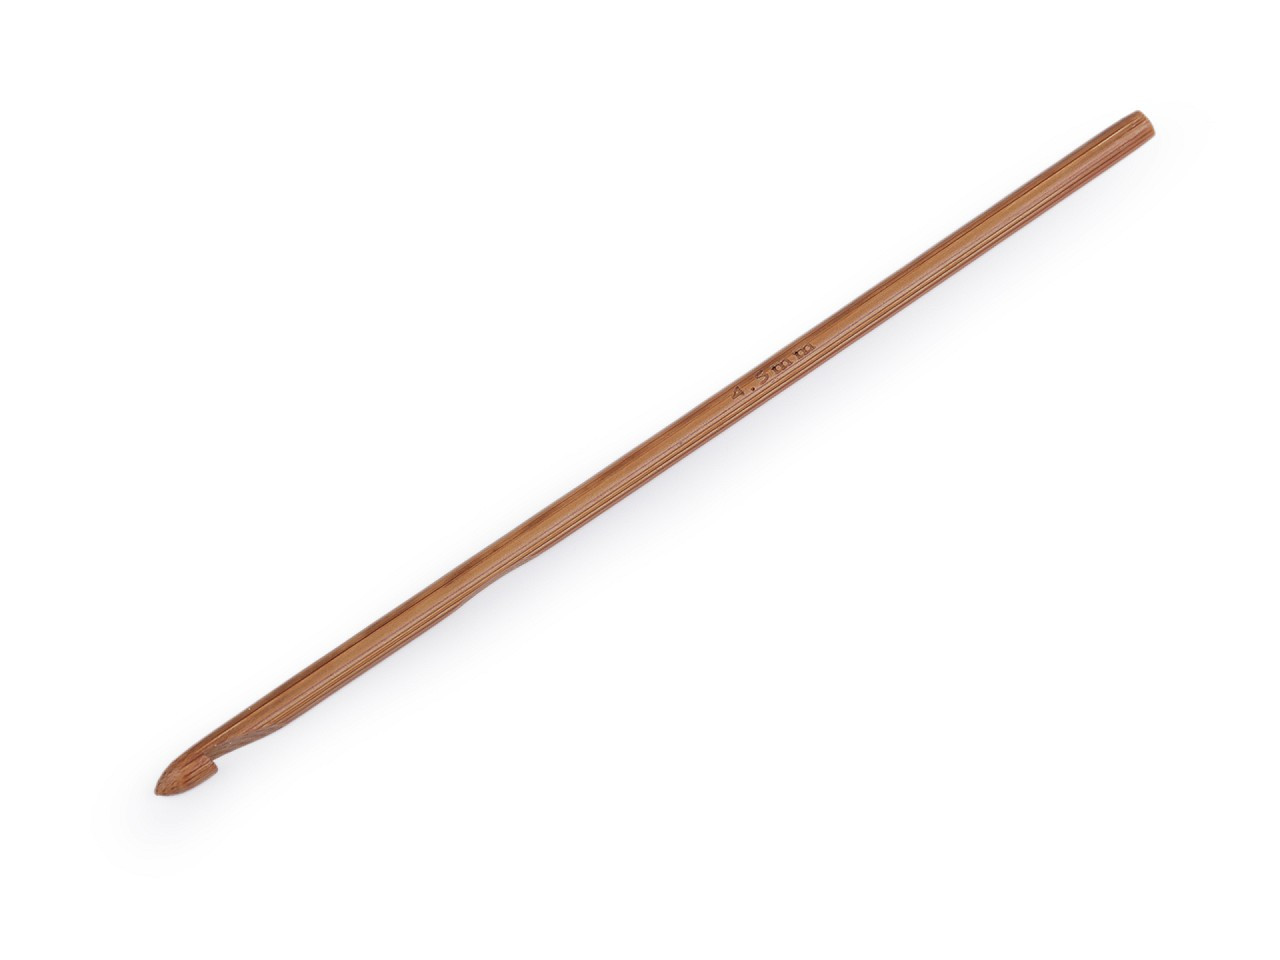 Bambusový háček na háčkování vel. 3; 4; 4,5; 5; 5,5, barva 5 (4,5 mm) bambus tmavý